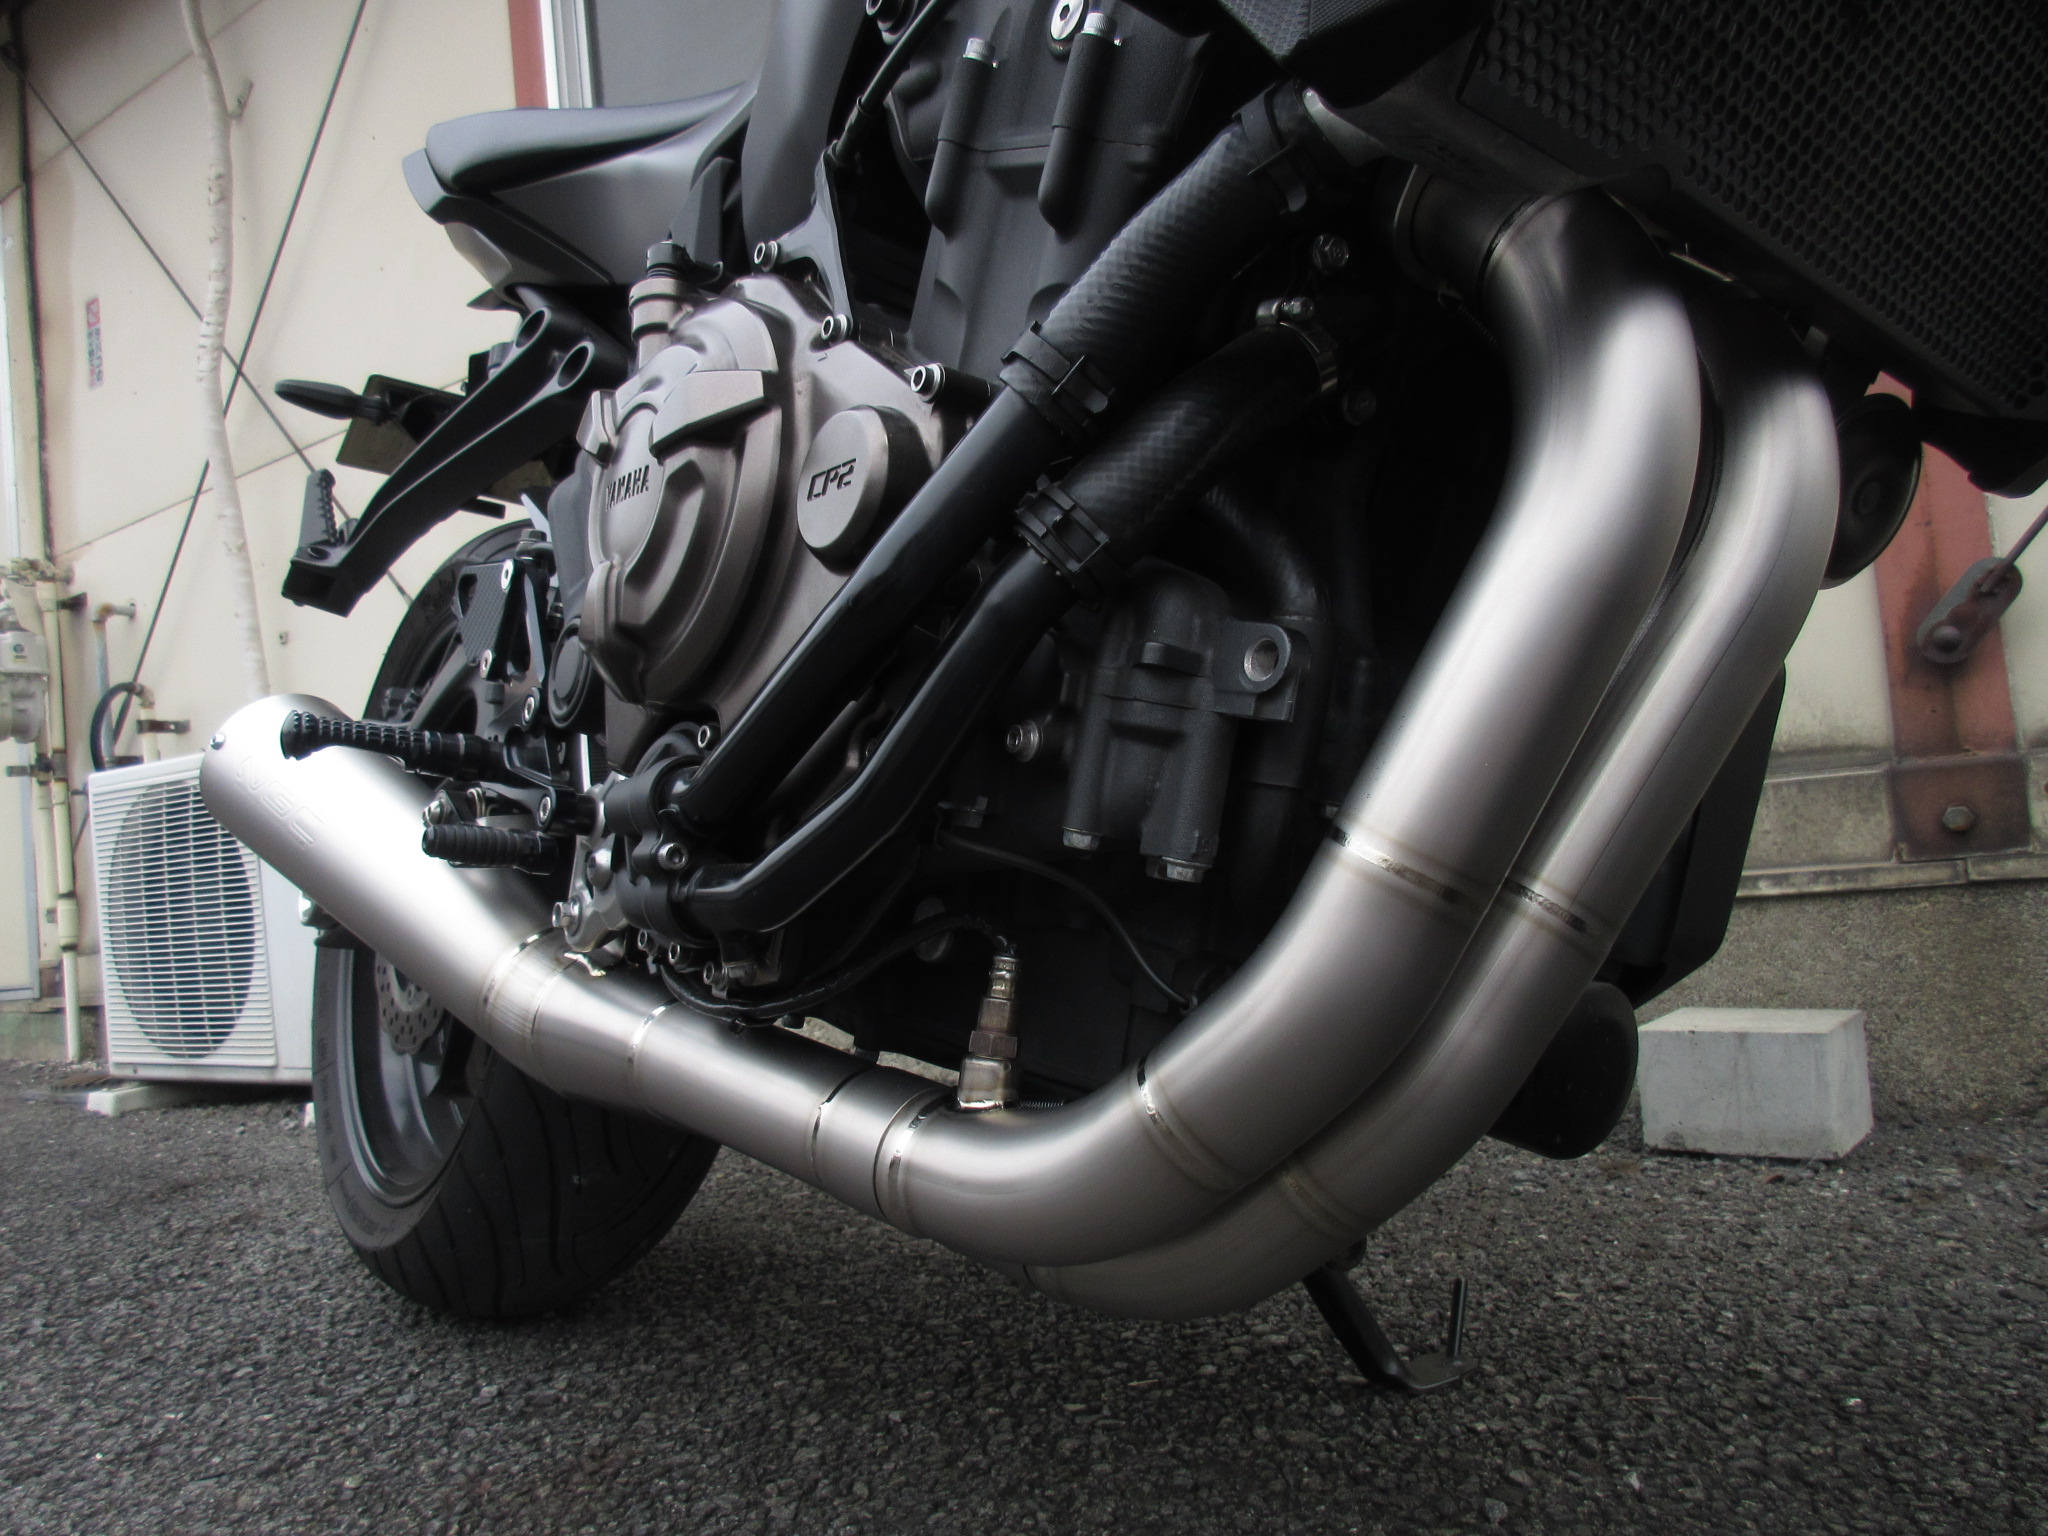 16435円 ブランド品 排気テールパイプ MT07フロントパイプオートバイの排気マフラー修正フロントパイプスリップオンマフラー排気 MT-07 2014 2015 2017 2017-2021 FZ07 車のオートバイの排気